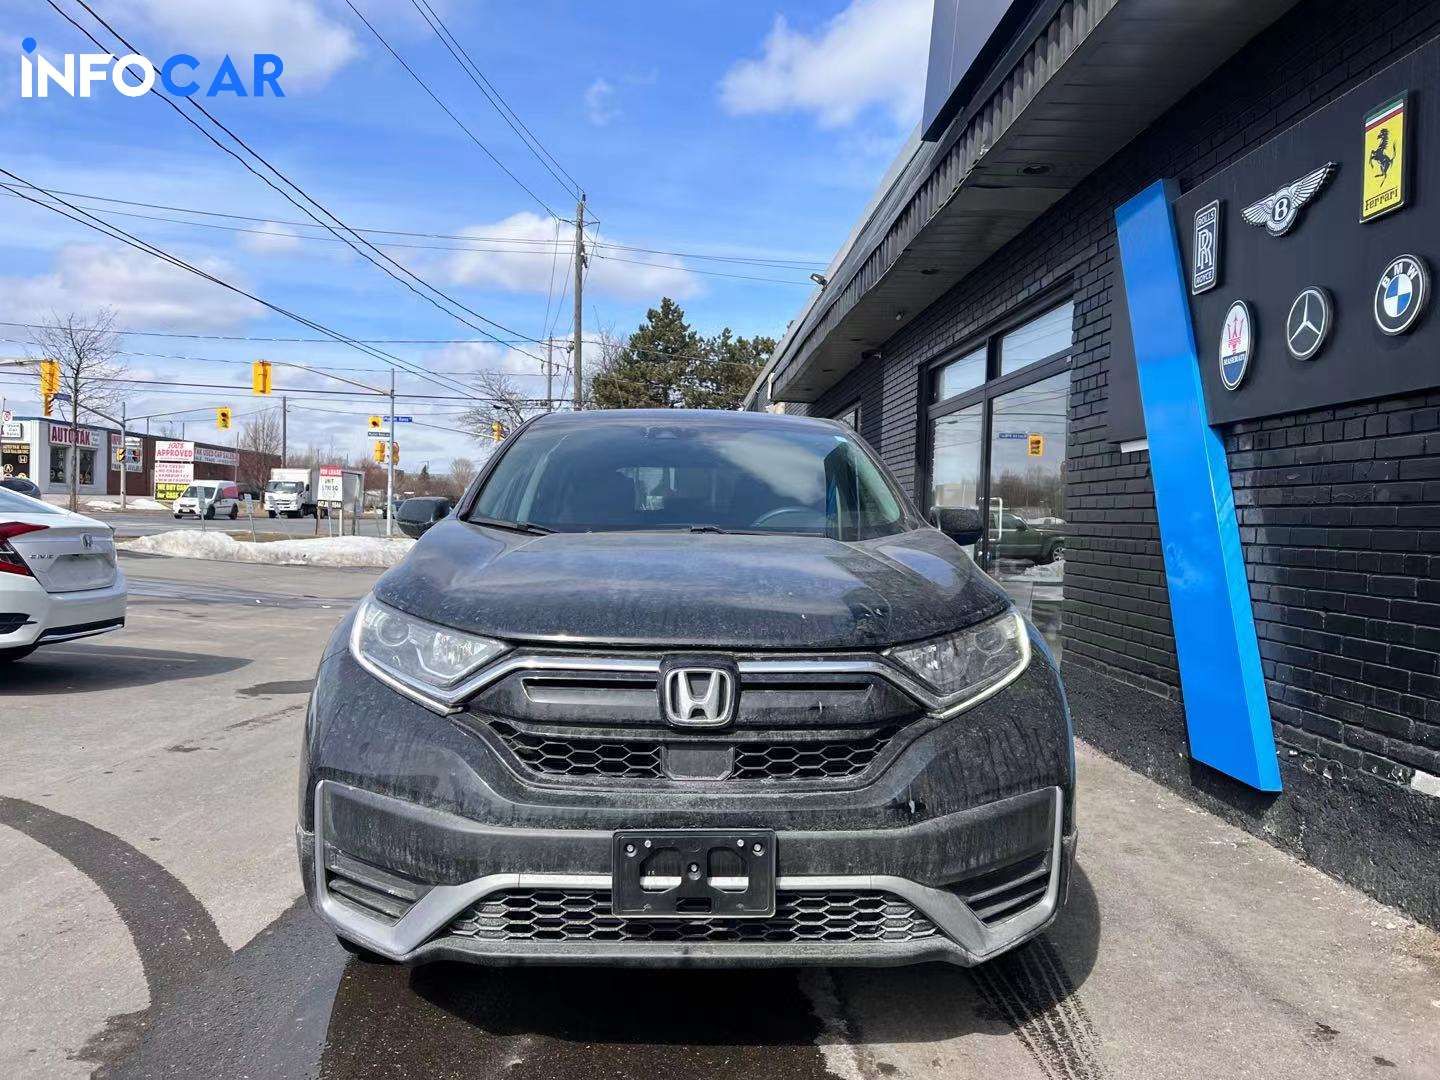 2021 Honda CR-V null - INFOCAR - Toronto Auto Trading Platform